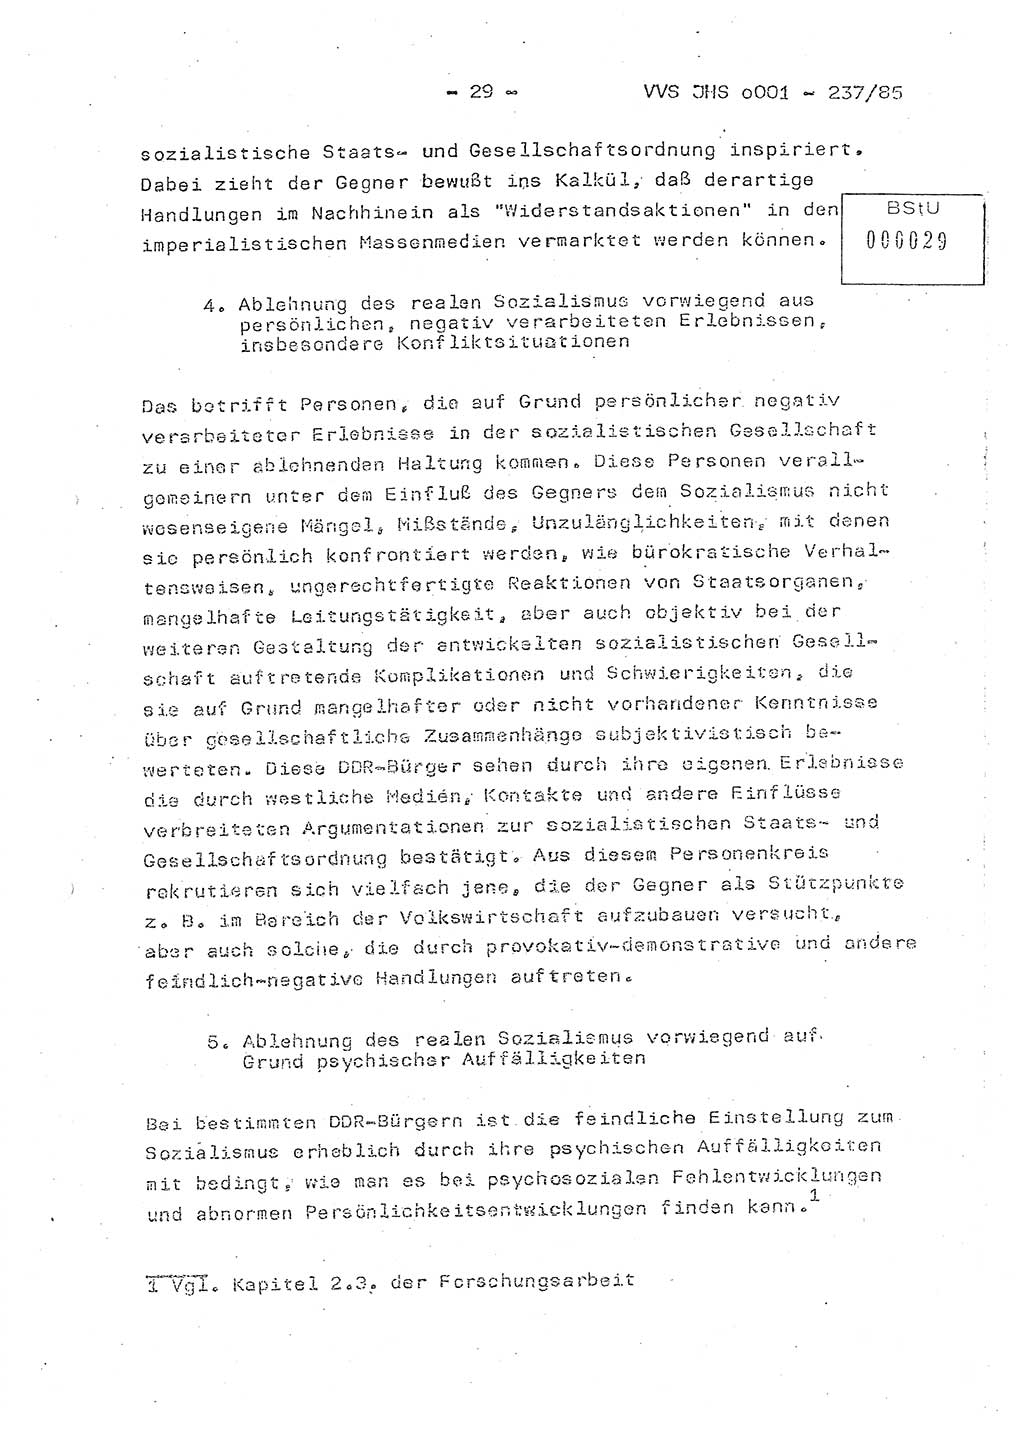 Dissertation Oberstleutnant Peter Jakulski (JHS), Oberstleutnat Christian Rudolph (HA Ⅸ), Major Horst Böttger (ZMD), Major Wolfgang Grüneberg (JHS), Major Albert Meutsch (JHS), Ministerium für Staatssicherheit (MfS) [Deutsche Demokratische Republik (DDR)], Juristische Hochschule (JHS), Vertrauliche Verschlußsache (VVS) o001-237/85, Potsdam 1985, Seite 29 (Diss. MfS DDR JHS VVS o001-237/85 1985, S. 29)